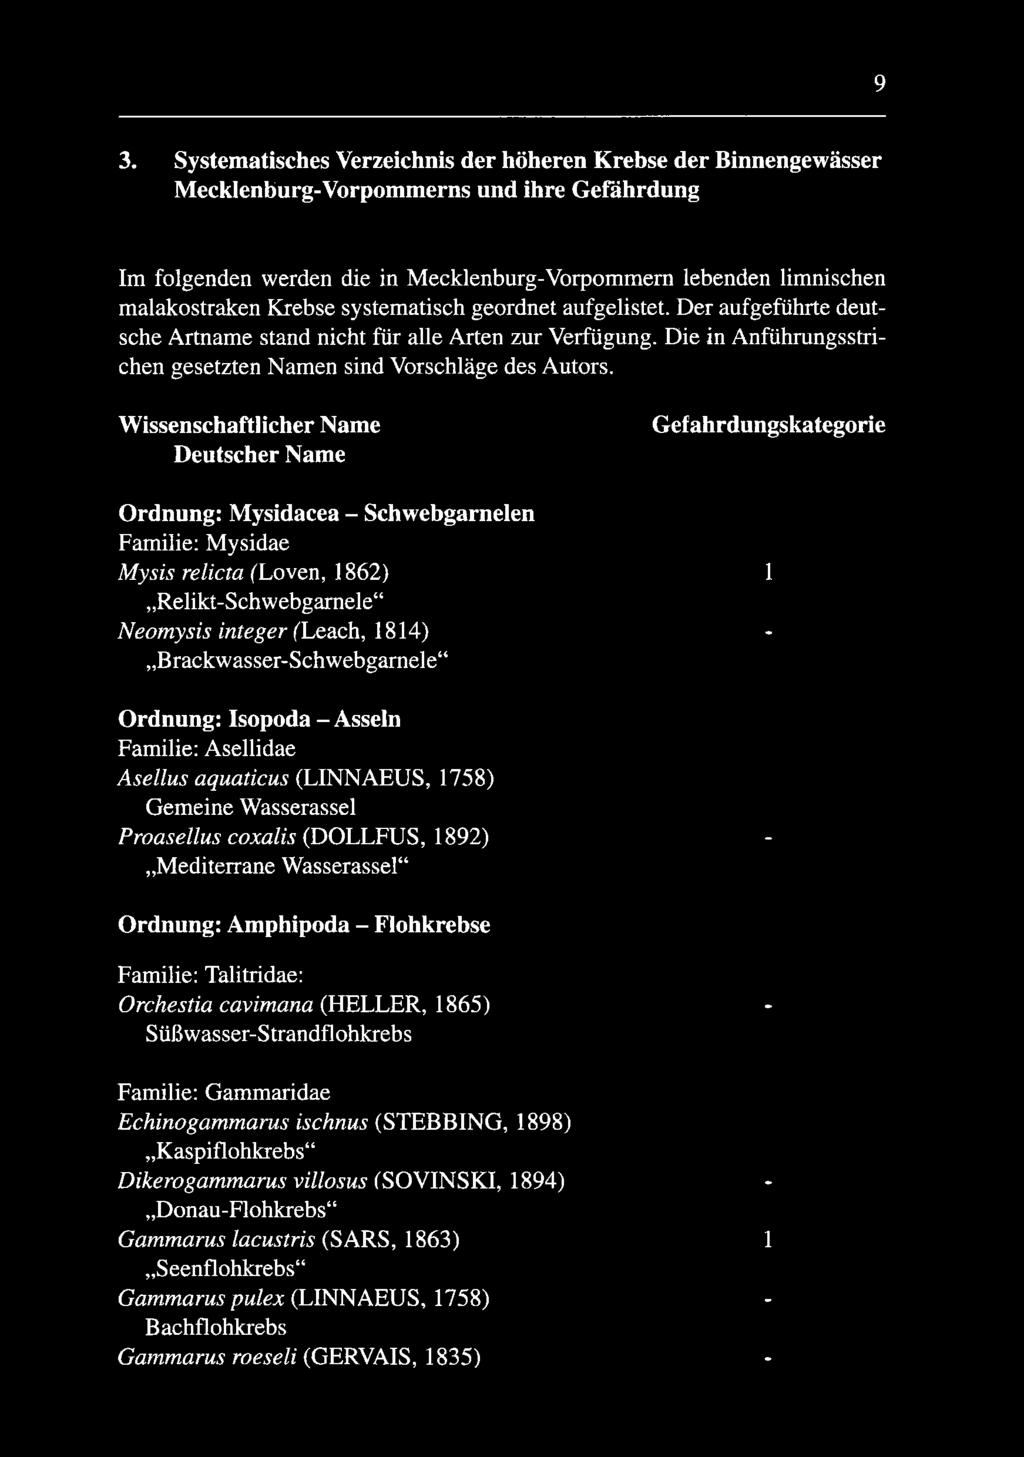 Wissenschaftlicher Name Deutscher Name Gefahrdungskategorie Ordnung: Mysidacea - Schwebgarnelen Familie: Mysidae Mysis relicta (Loven, 1862) 1 Relikt-Schwebgarnele Neomysis integer (Leach, 1814) -